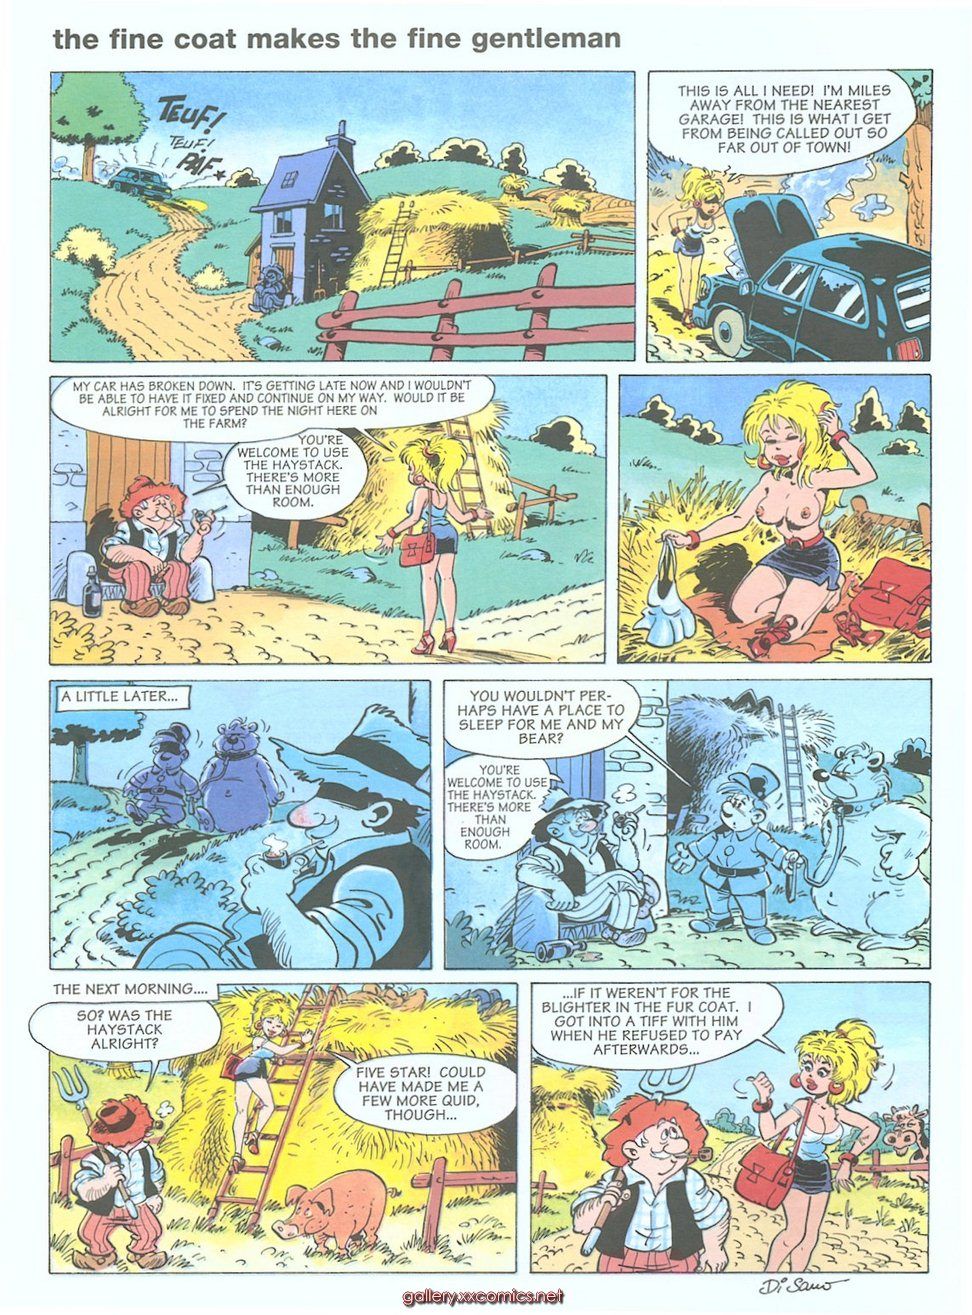 [Cartoonza] The Flintstones - Nice Job page 4